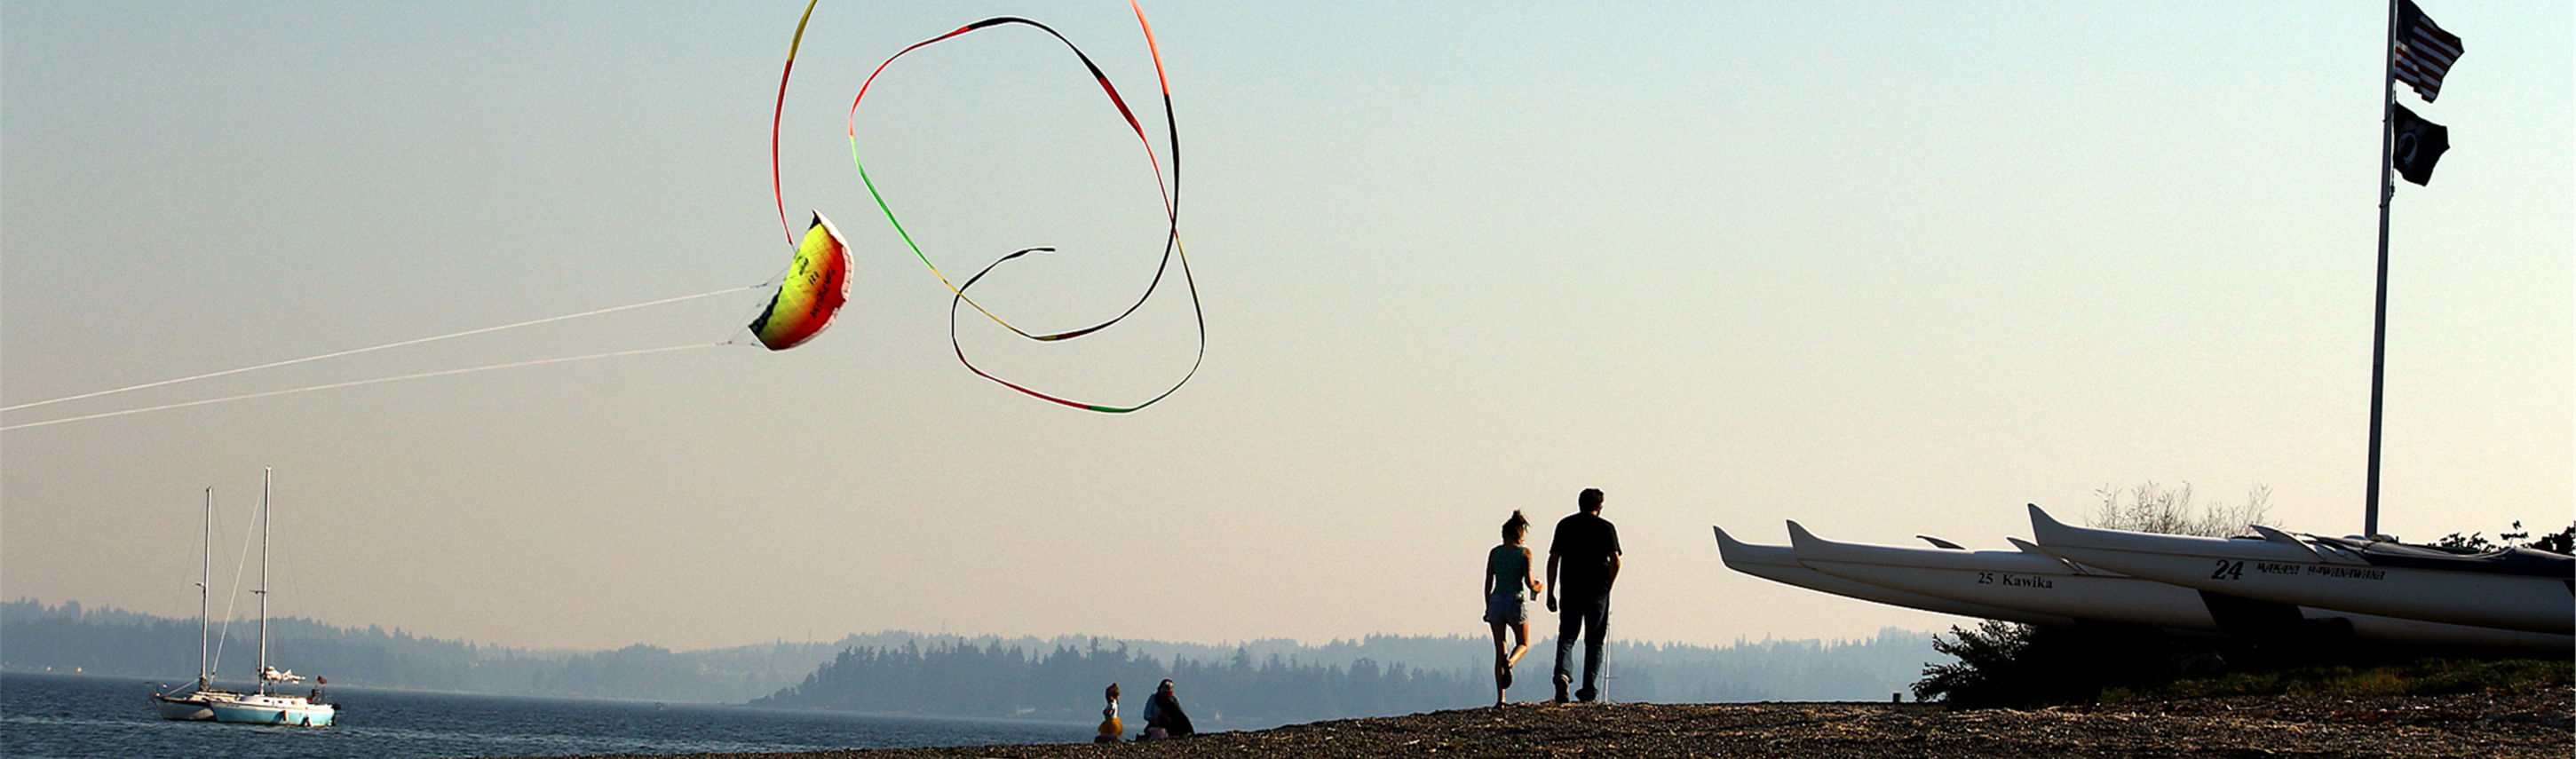 couple on beach, kite, sunset, sailbot